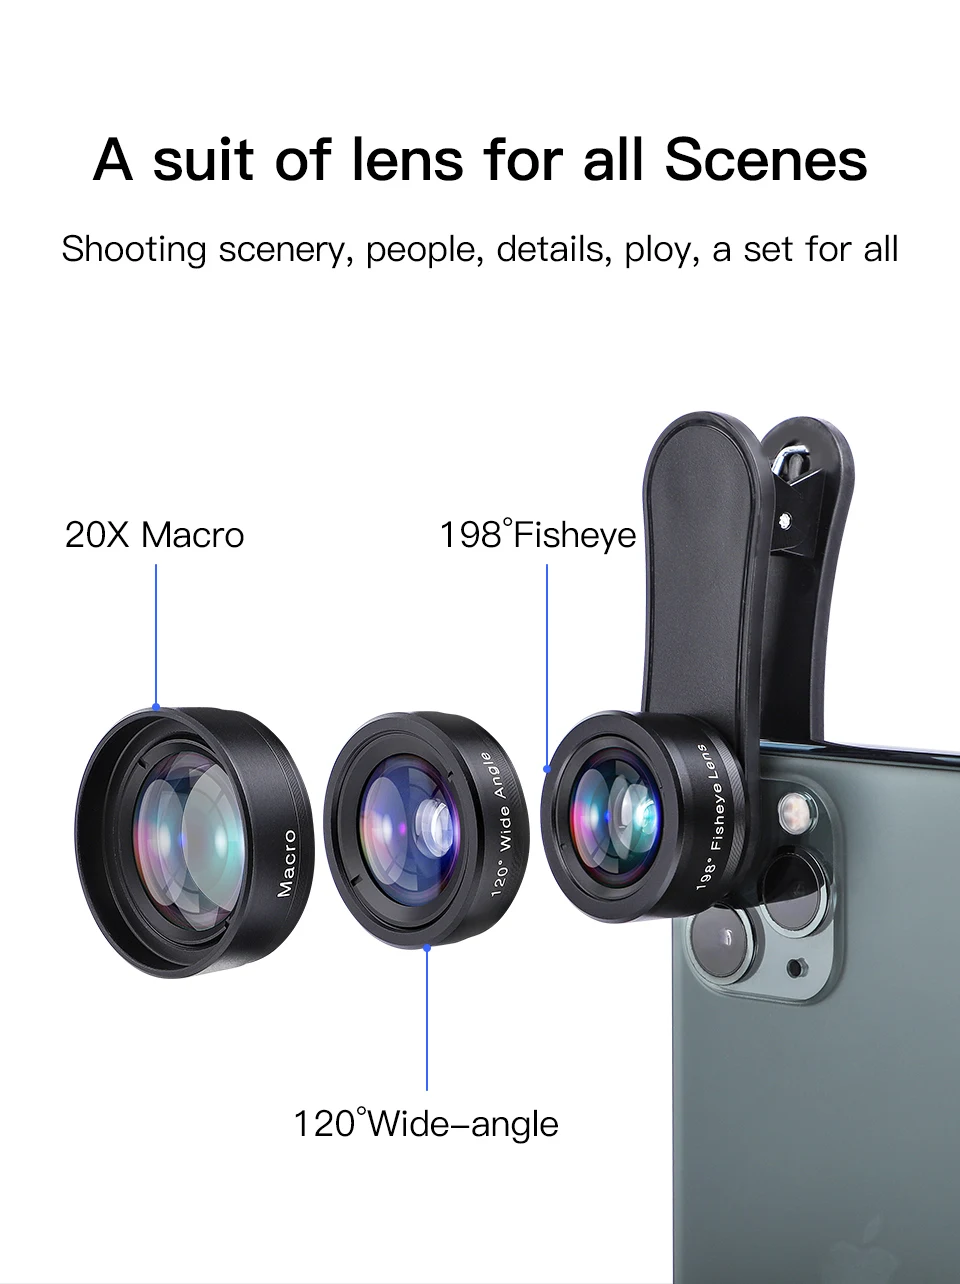 KUULAA 4K HD объектив камеры мобильного телефона Комплект 3 в 1 широкоугольный Объектив Макро Рыбий глаз линзы для iPhone 11 Pro Max huawei P20 Pro samsung